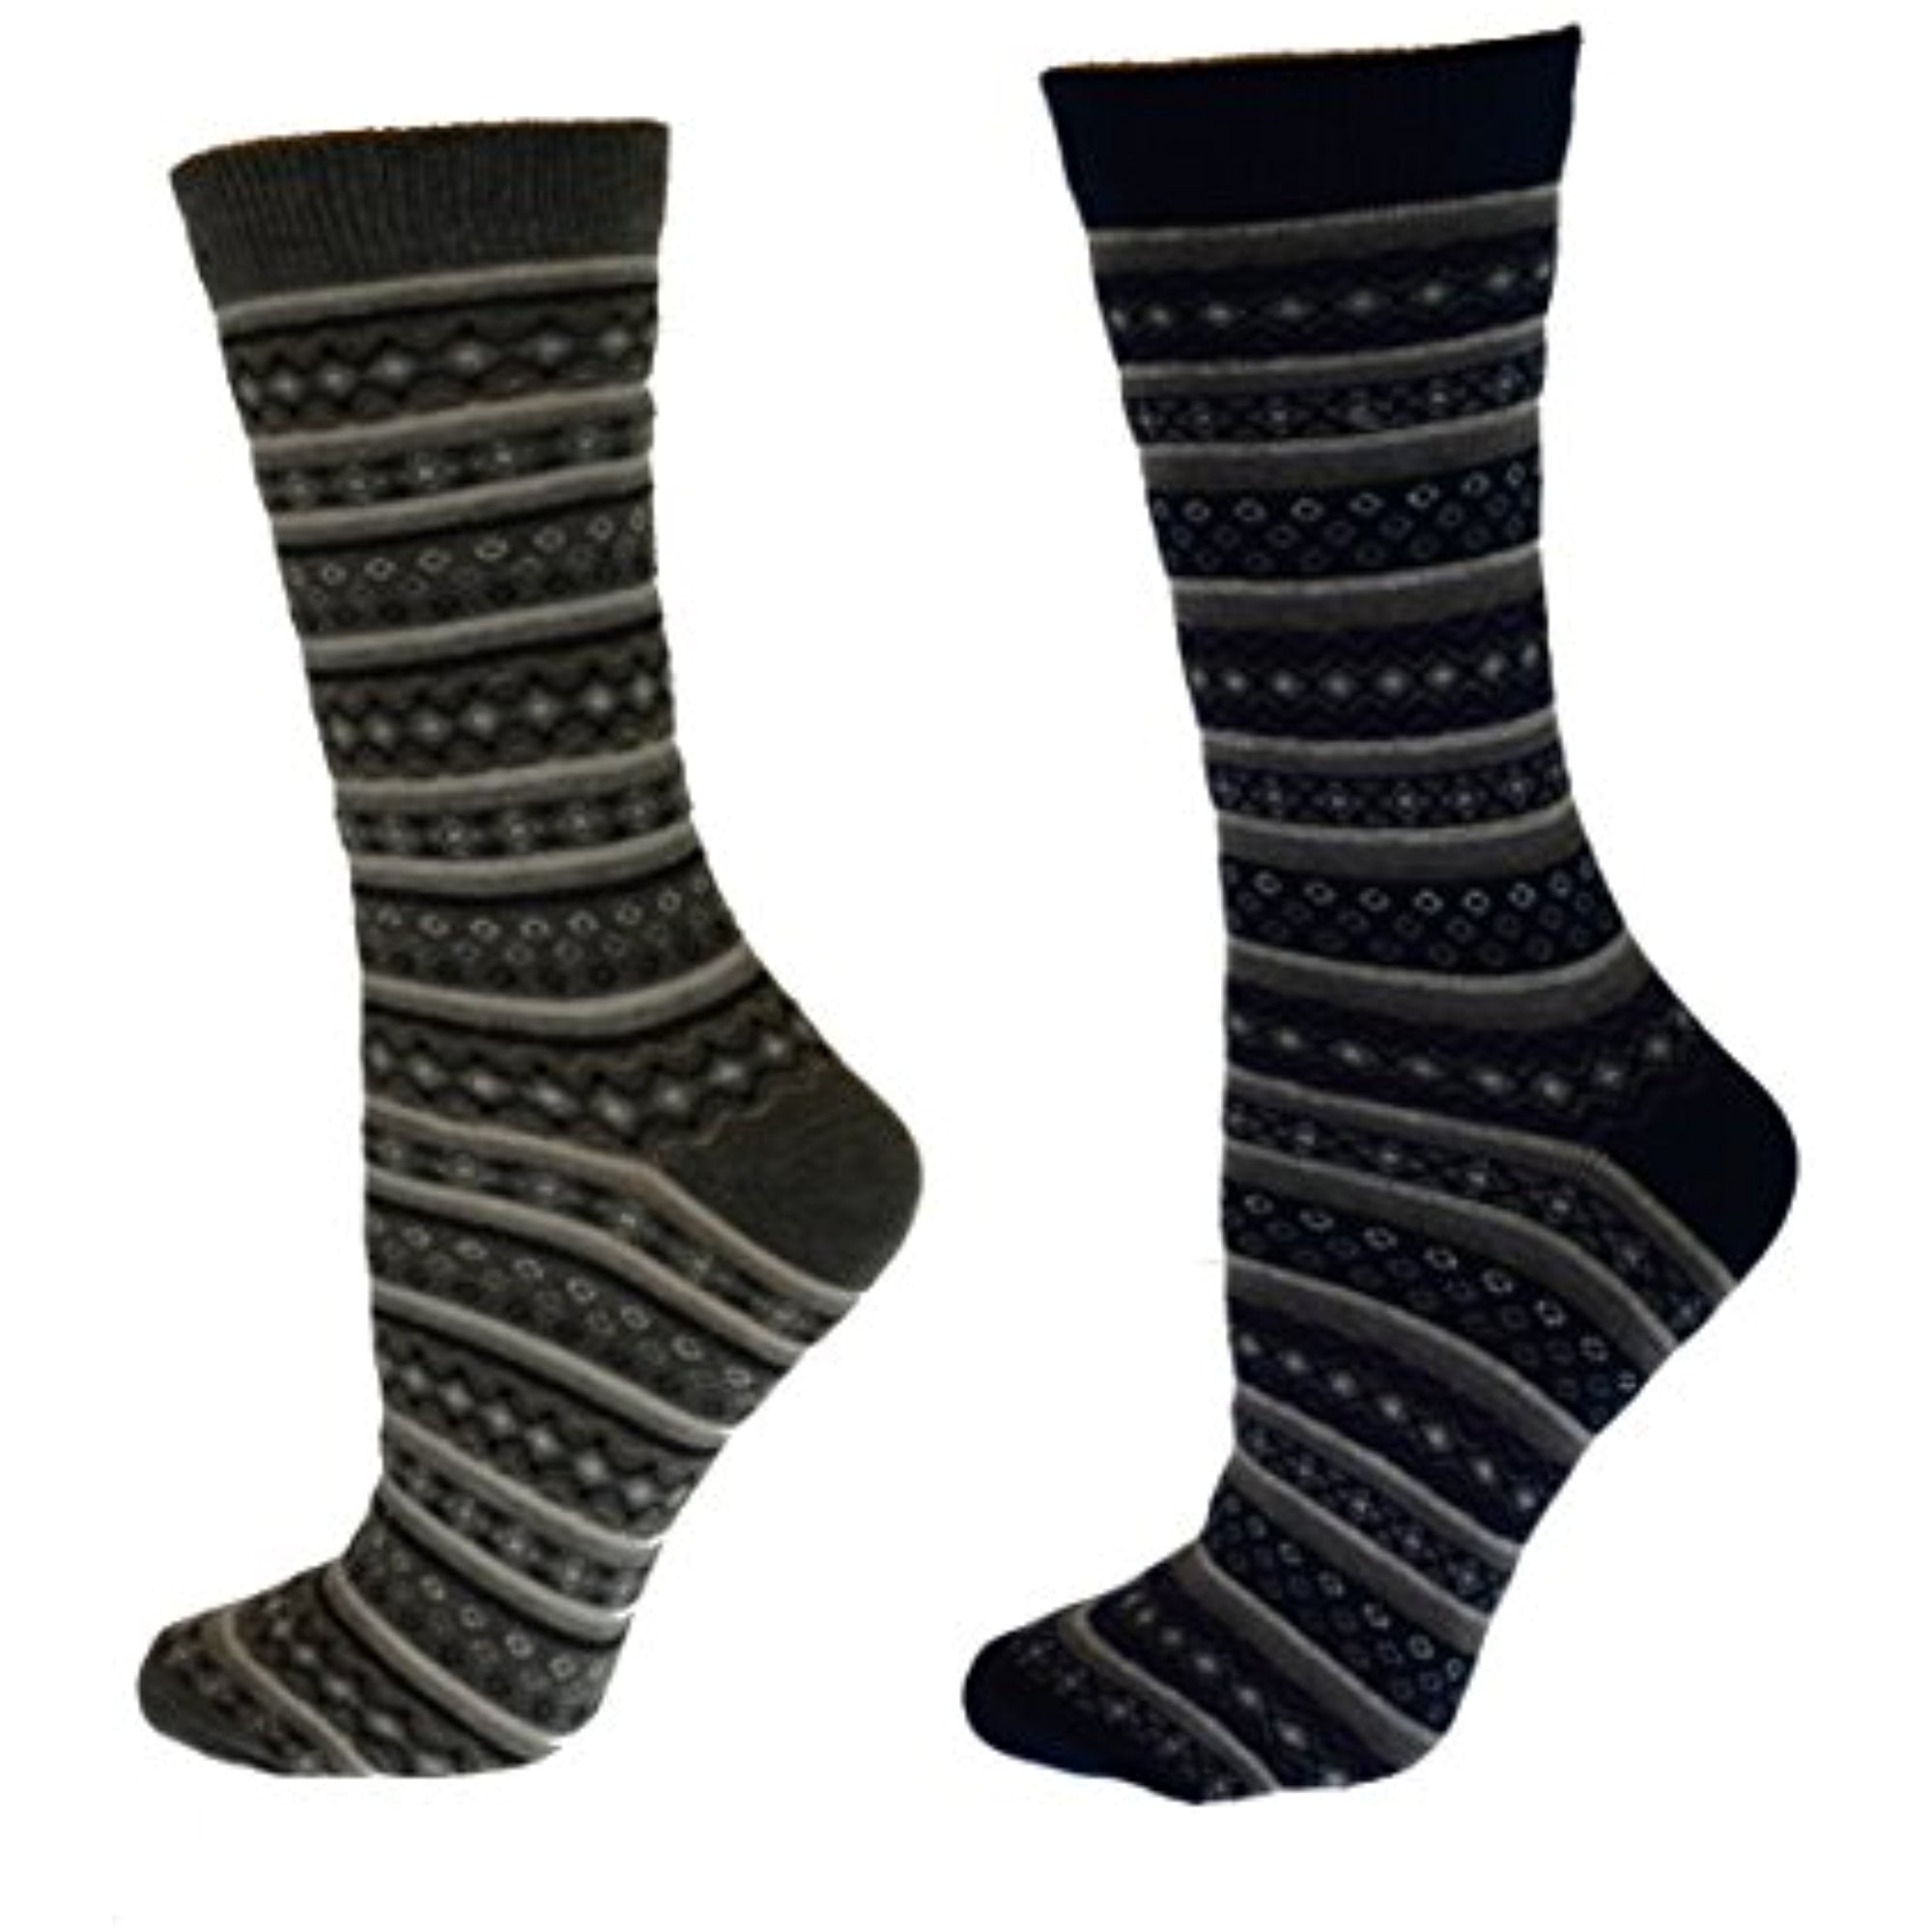 Sierra Socks - Sierra Socks Women's Flower Pattern Gray & Navy Striped ...